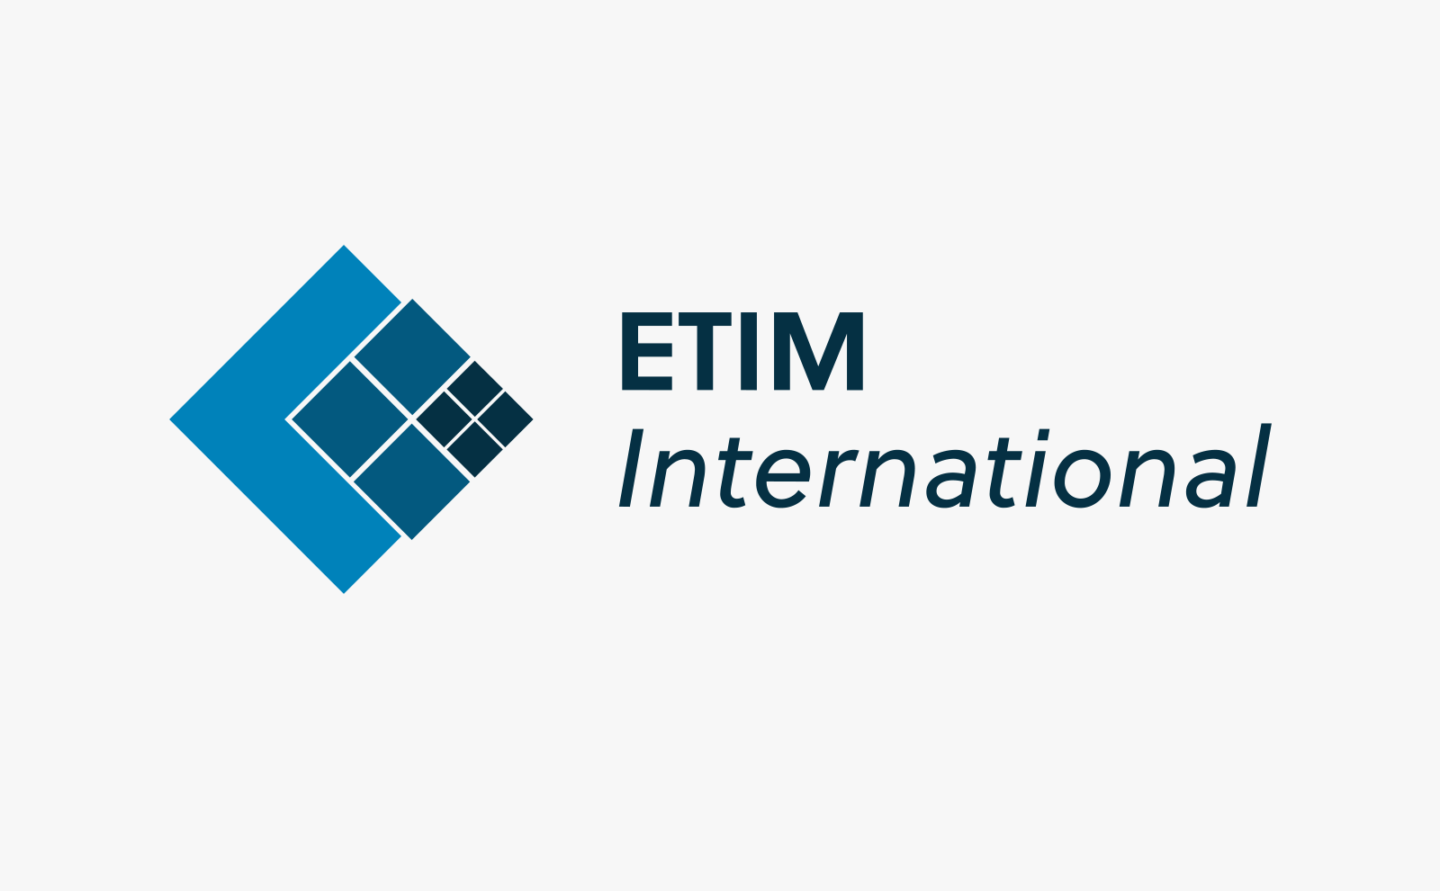 Der ETIM e.V. ist eine Initiative zur Standardisierung des elektronischen Produktdatenaustausches.